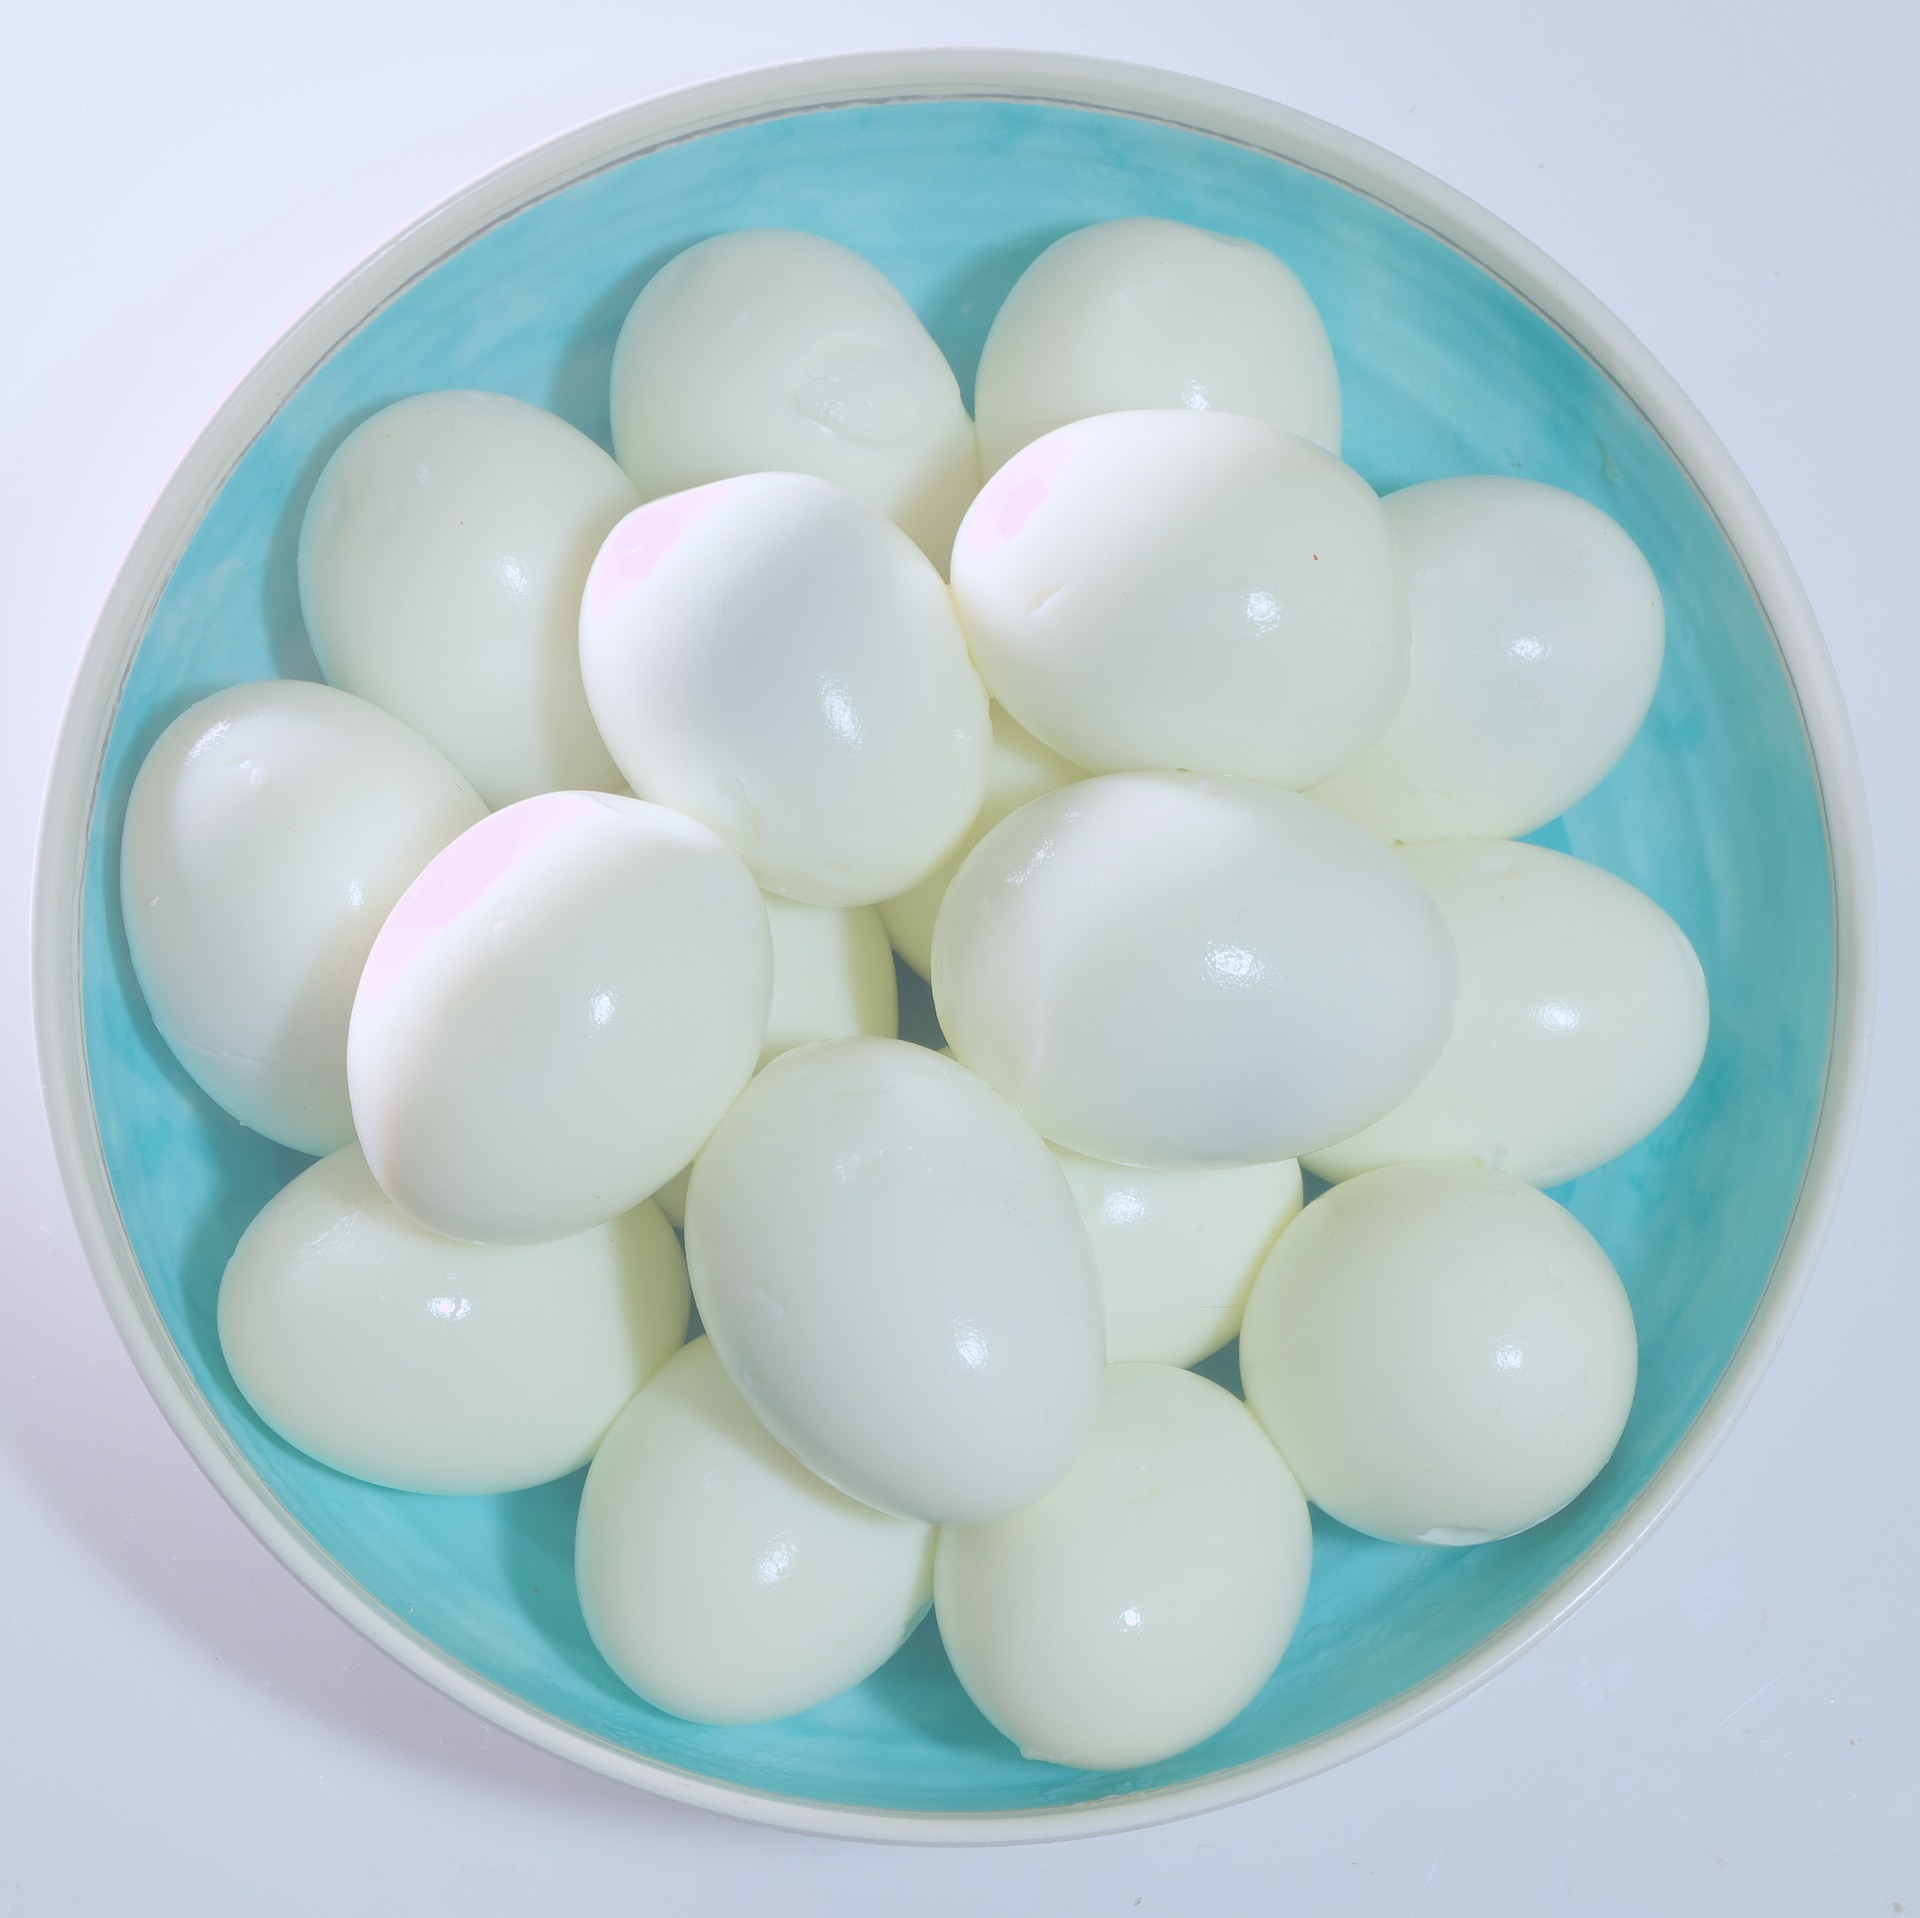 ביצים קשות החטיף המושלם לאורח חיים בריא